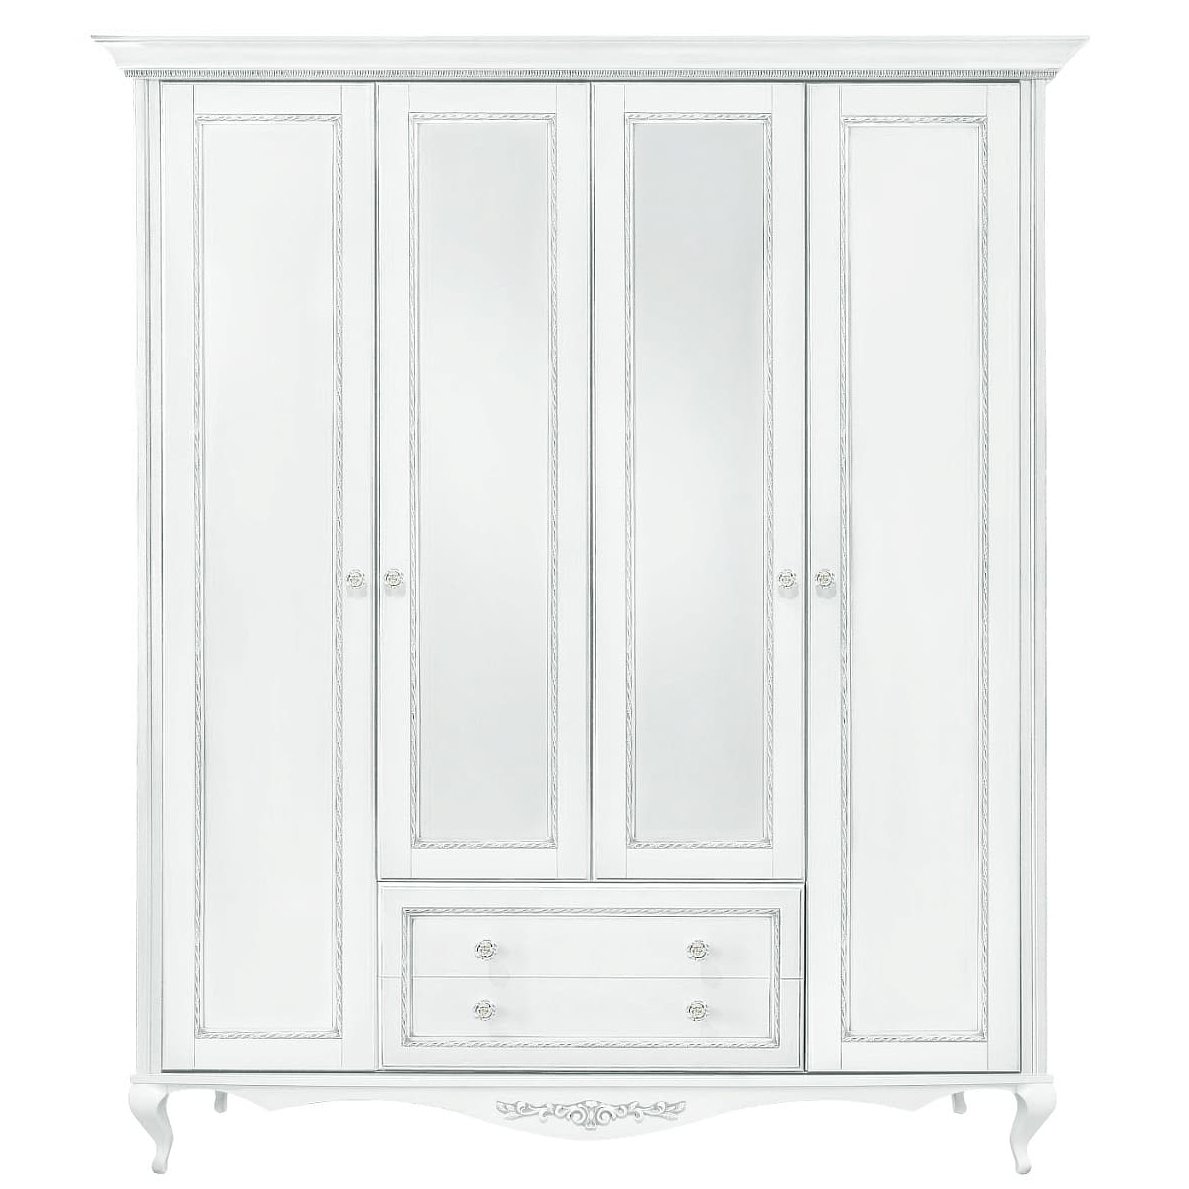 Шкаф платяной Timber Неаполь, 4-х дверный с зеркалами 204x65x227 см цвет: белый с серебром (T-524)T-524